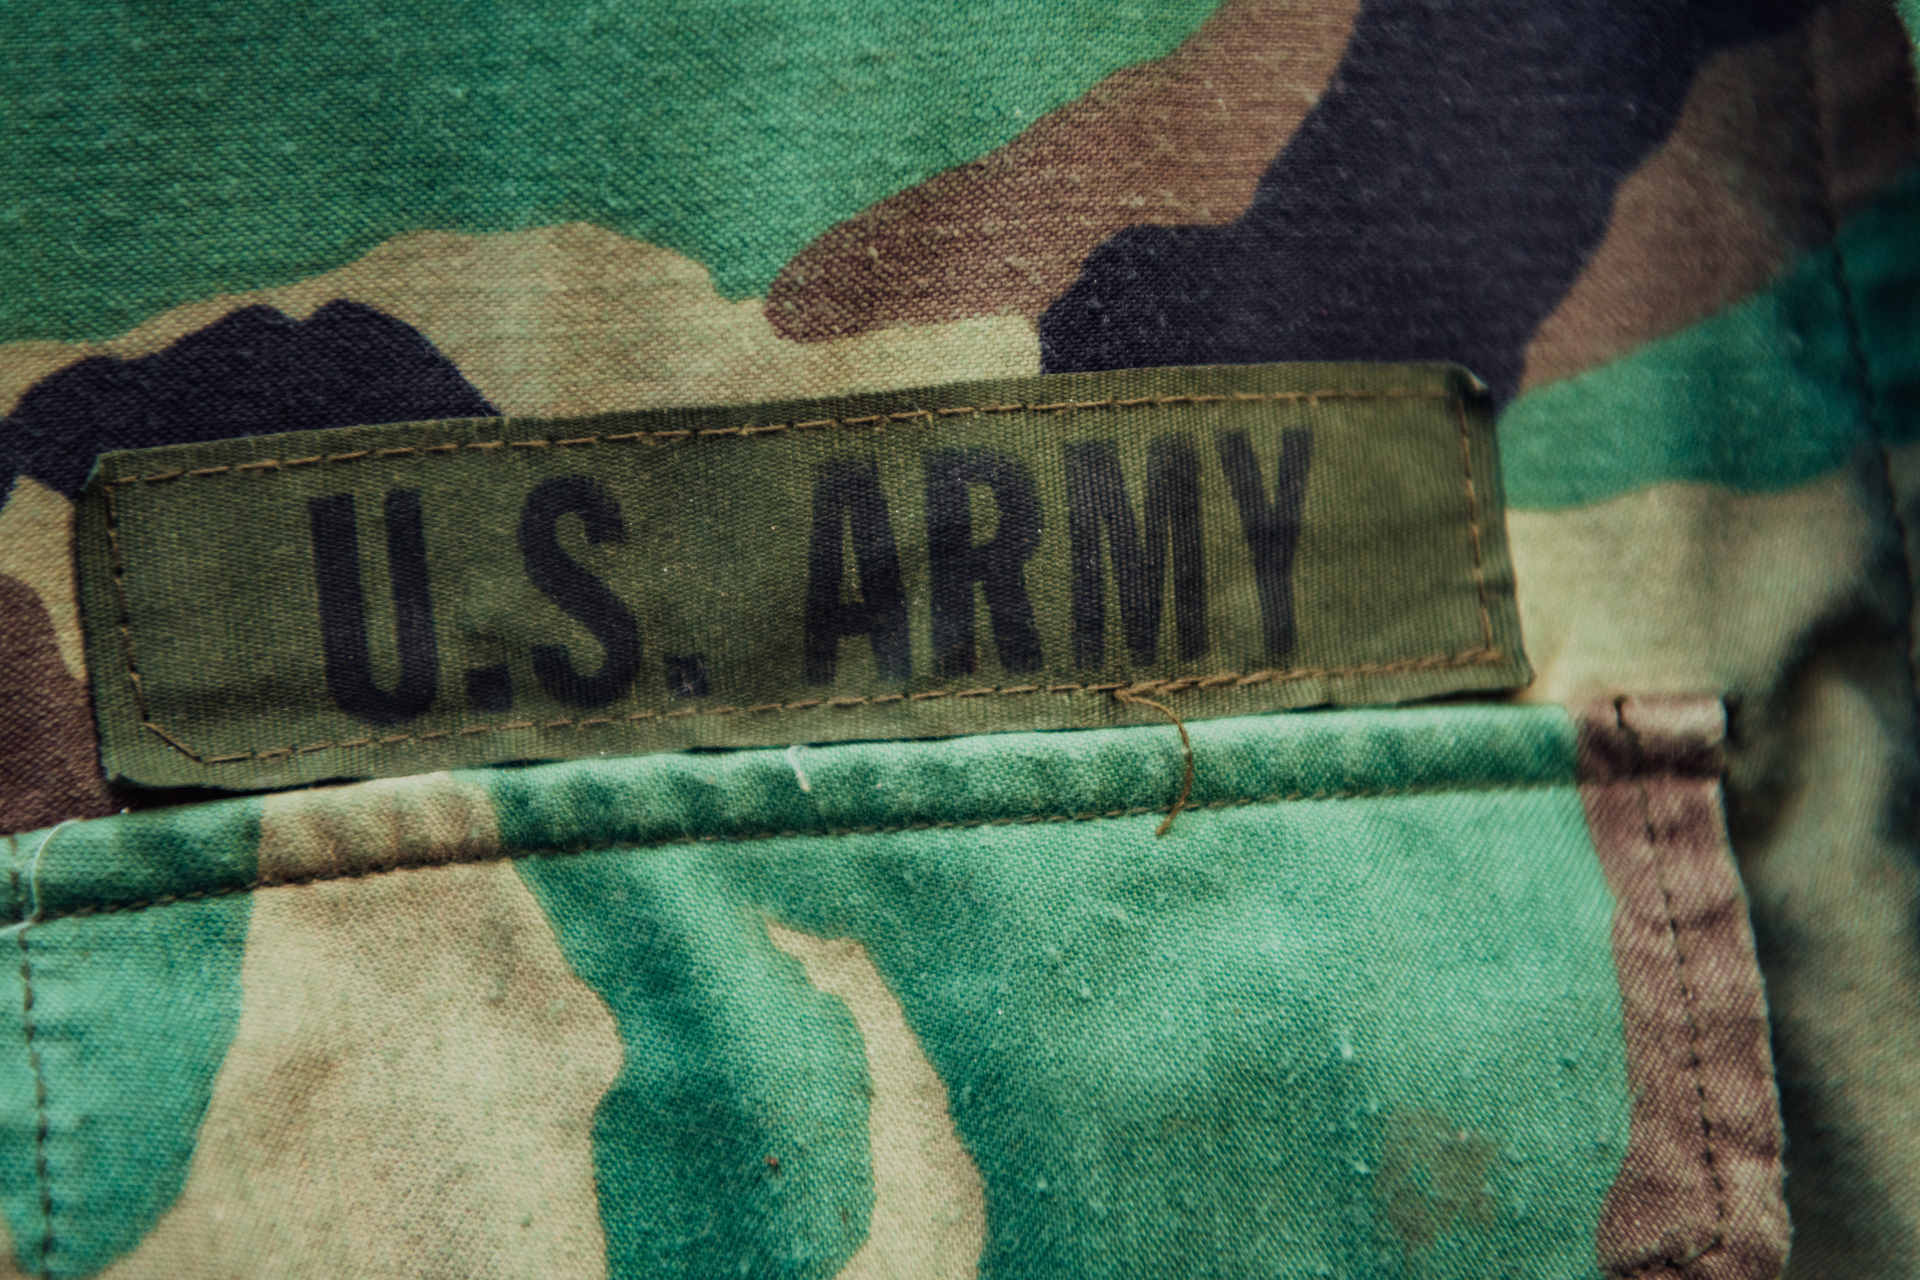 Żołnierz z naszywką "USA Army" umieszczoną na jego mundurze, symbolizującą przynależność do amerykańskiej armii